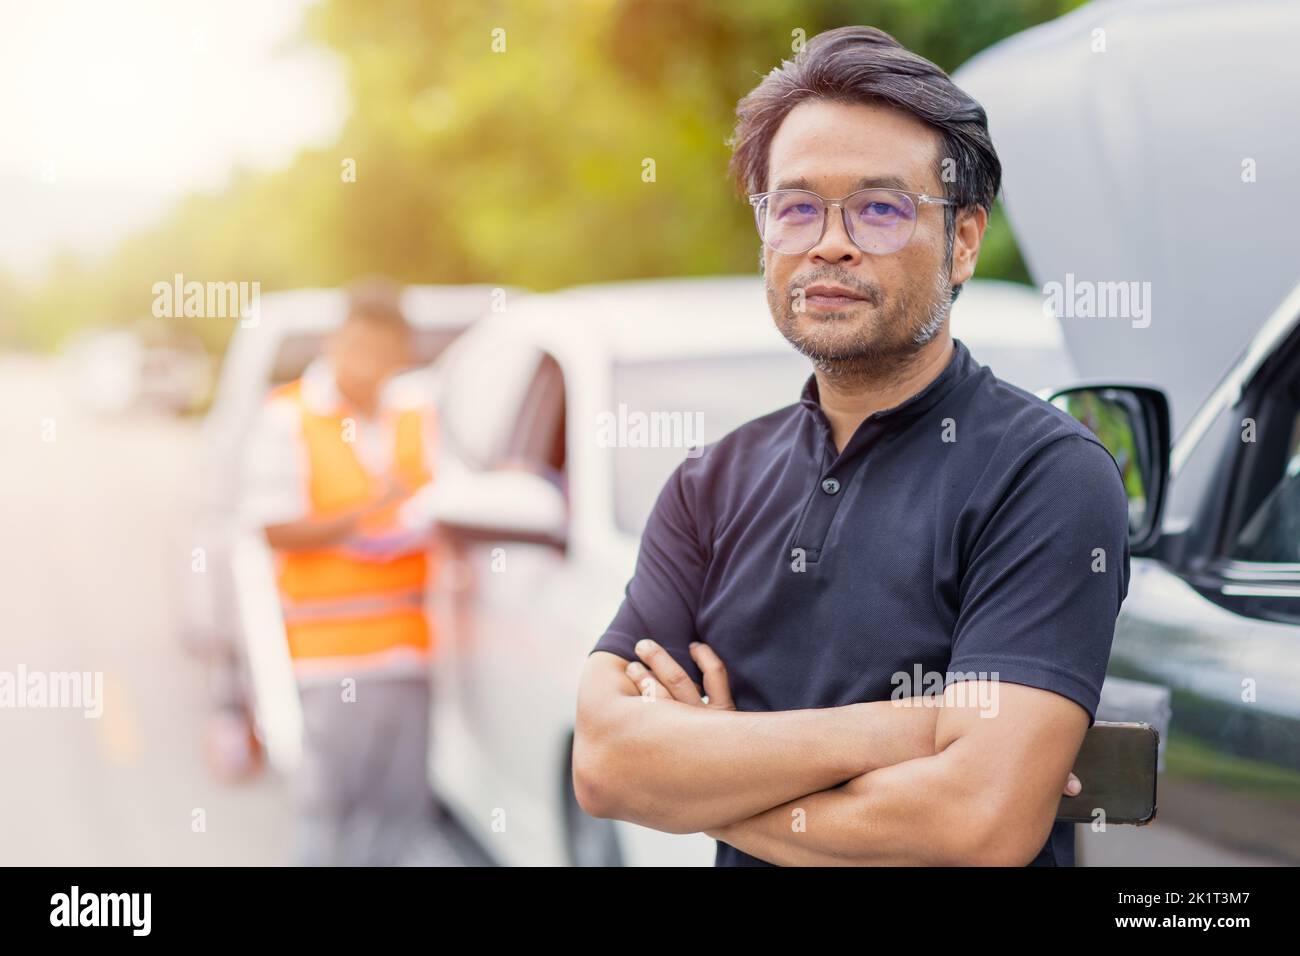 l'uomo asiatico astuto adulto in piedi sorriso soddisfatto a bordo strada per il problema di crash auto risolvere un buon servizio da parte del personale del team assicuratore Foto Stock